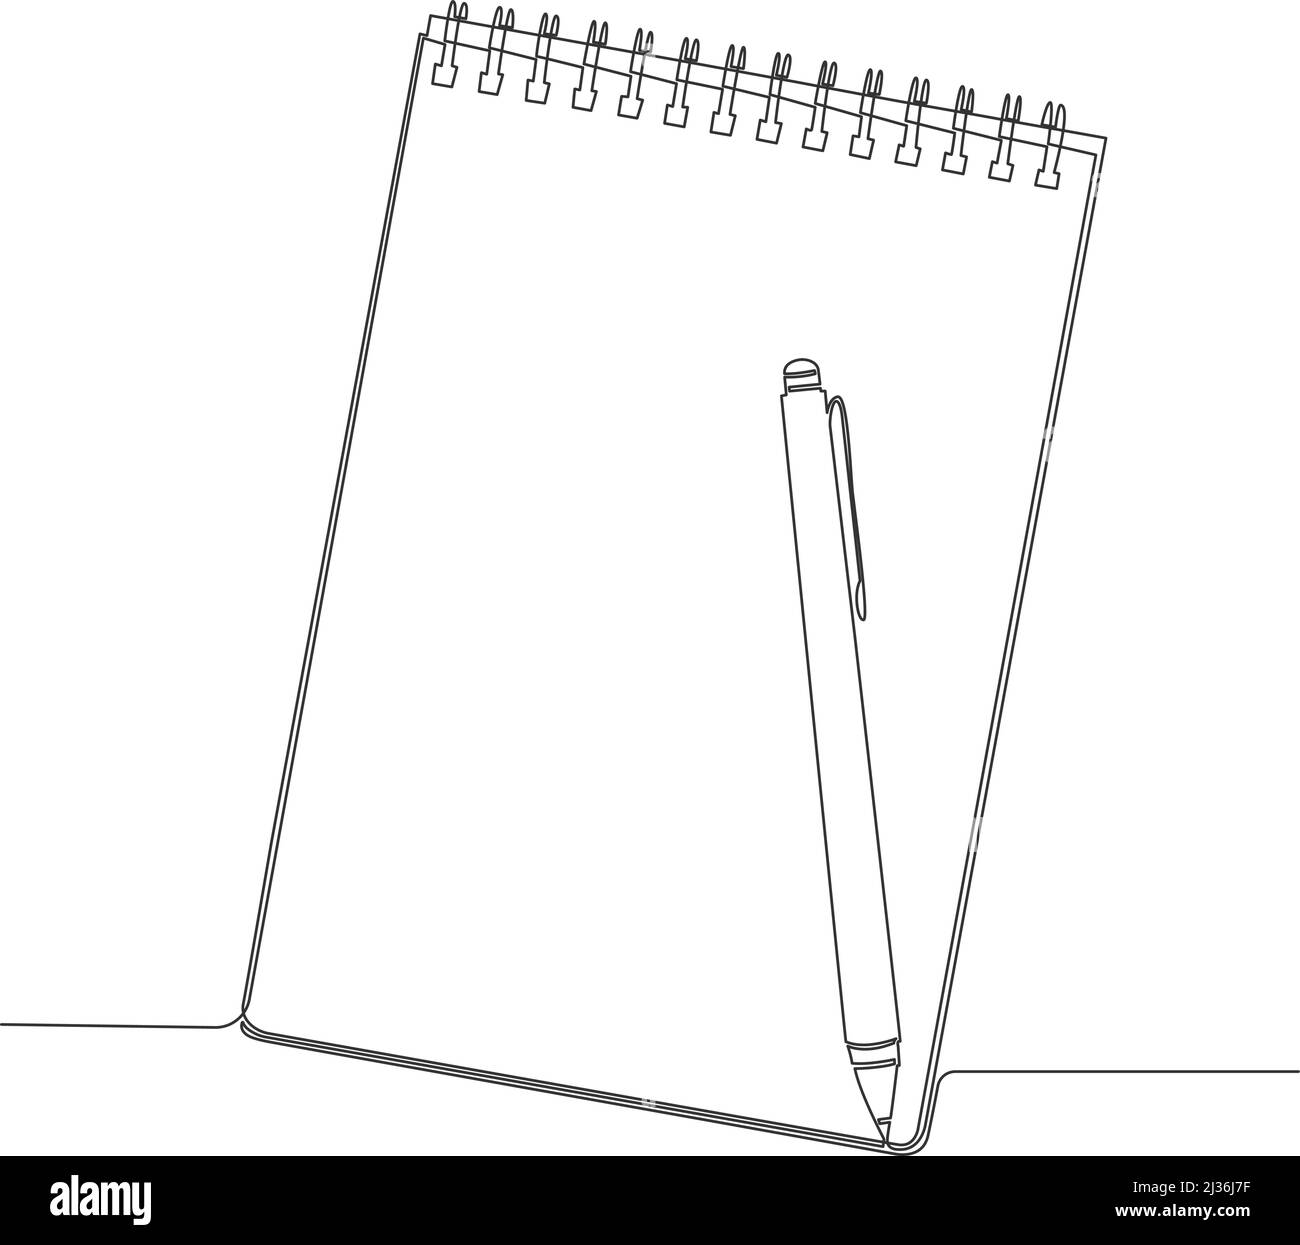 blocco note a linea singola e penna disegnati a mano isolati su sfondo bianco, illustrazione vettoriale a linea continua Illustrazione Vettoriale